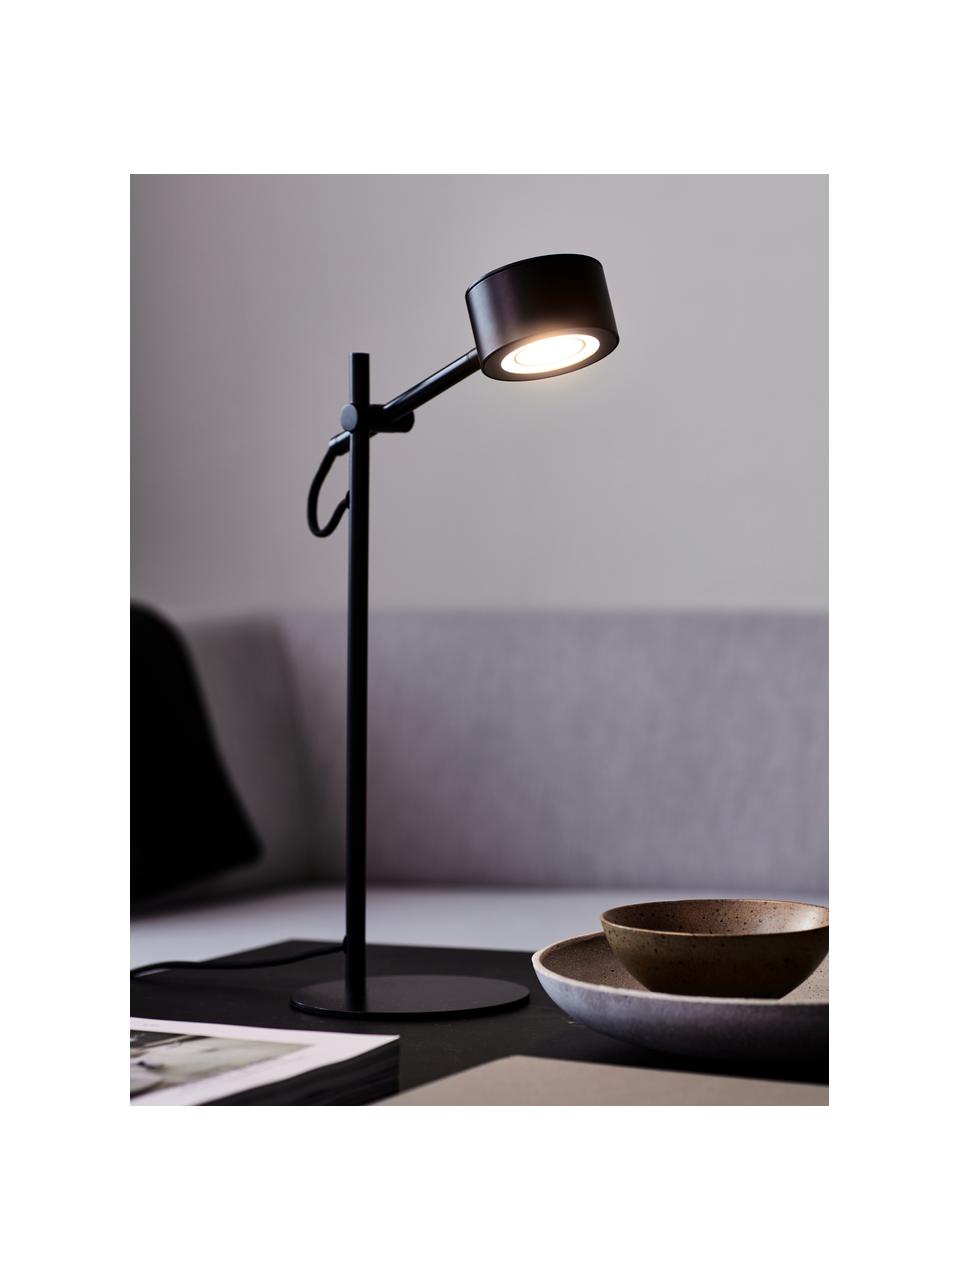 Lampa biurkowa LED z funkcją przyciemniania Clyde, Czarny, S 15 x W 41 cm